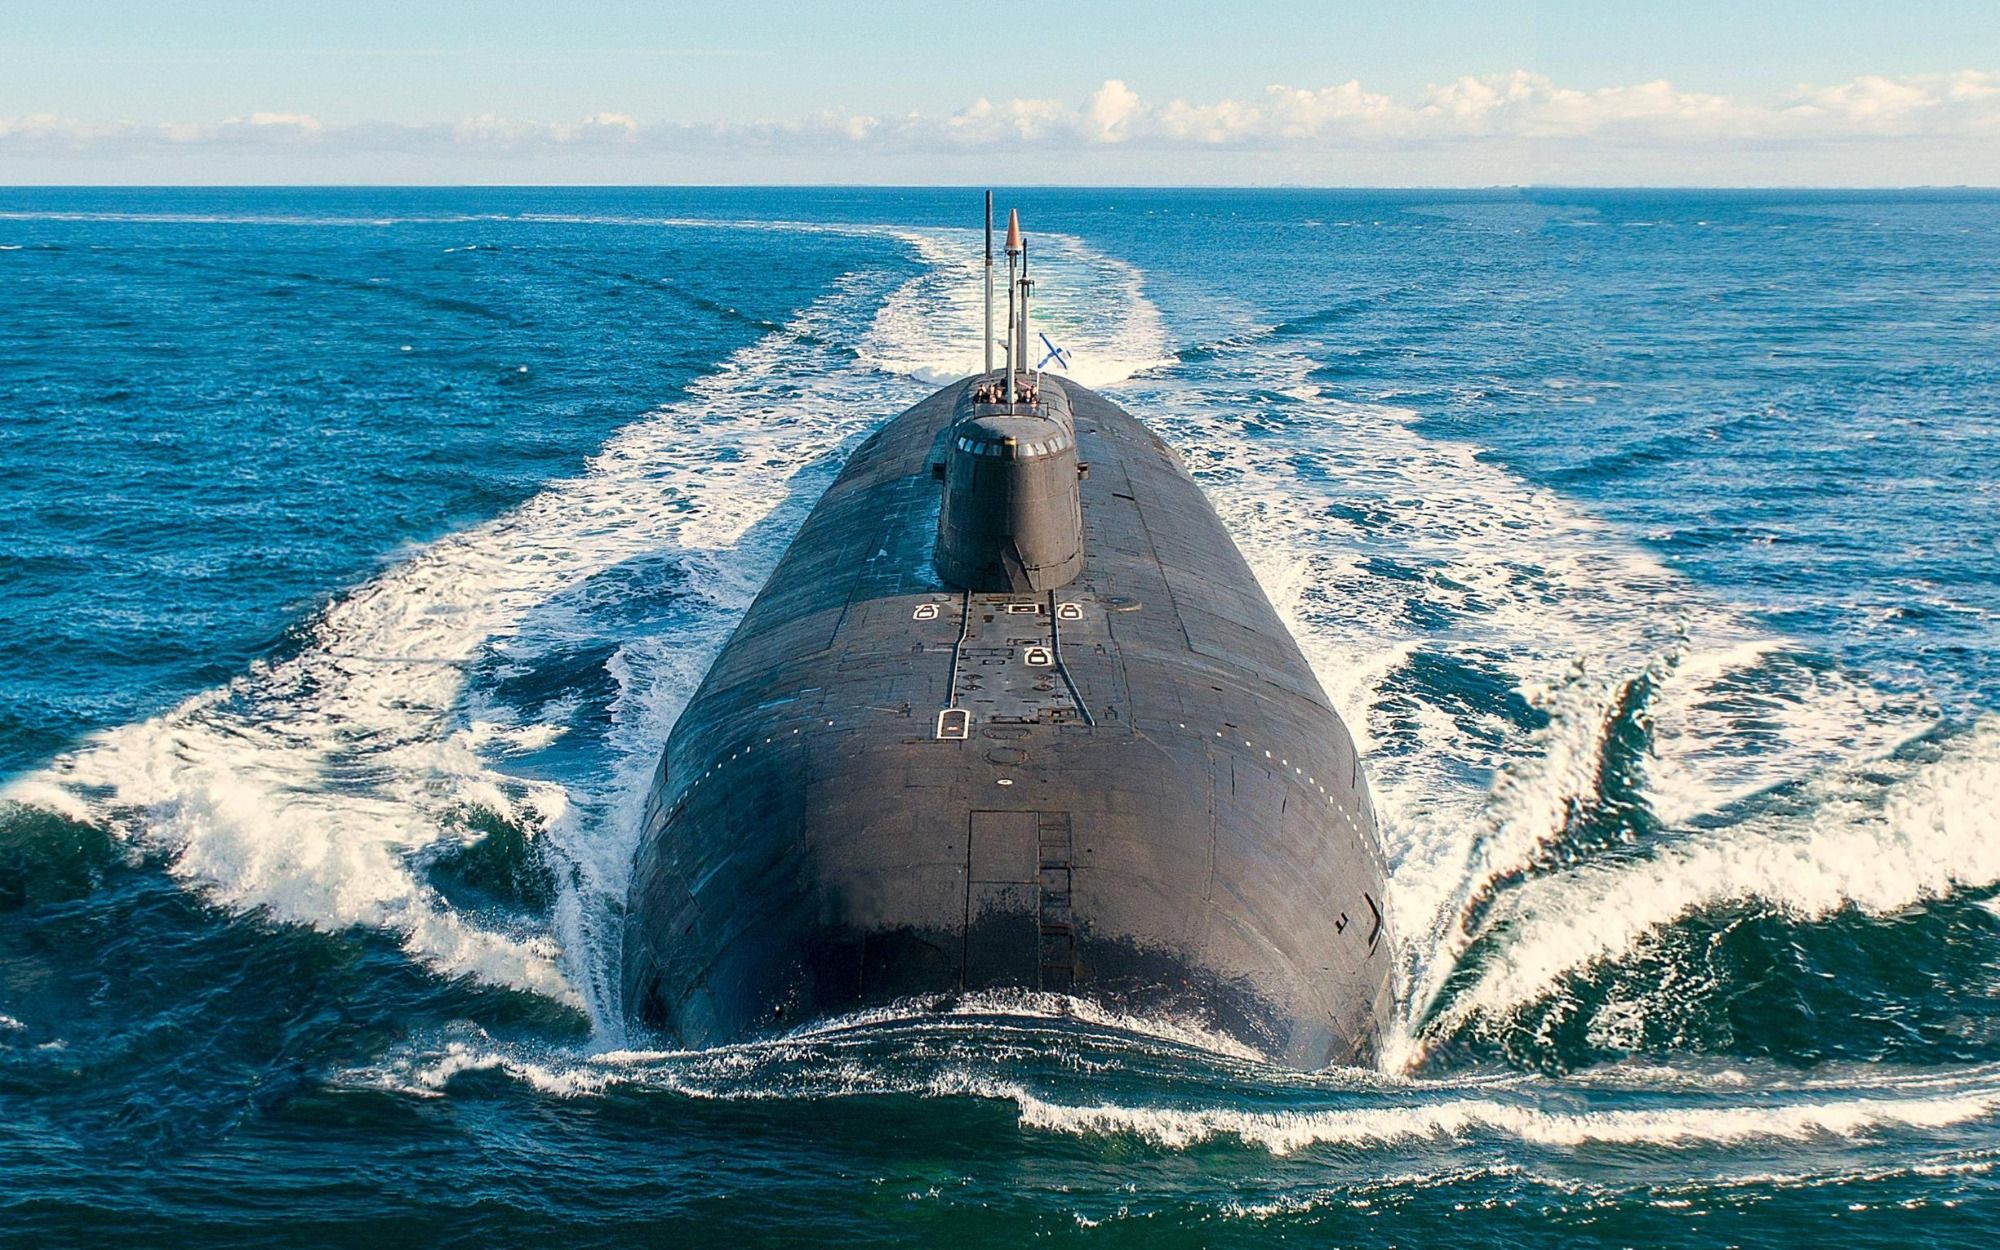 Διοικητής ΝΑΤΟ στην Ευρώπη: «Ο Στόλος πυρηνικών υποβρυχίων της Ρωσίας έχει πρωτοφανή ετοιμότητα αυτή τη στιγμή»